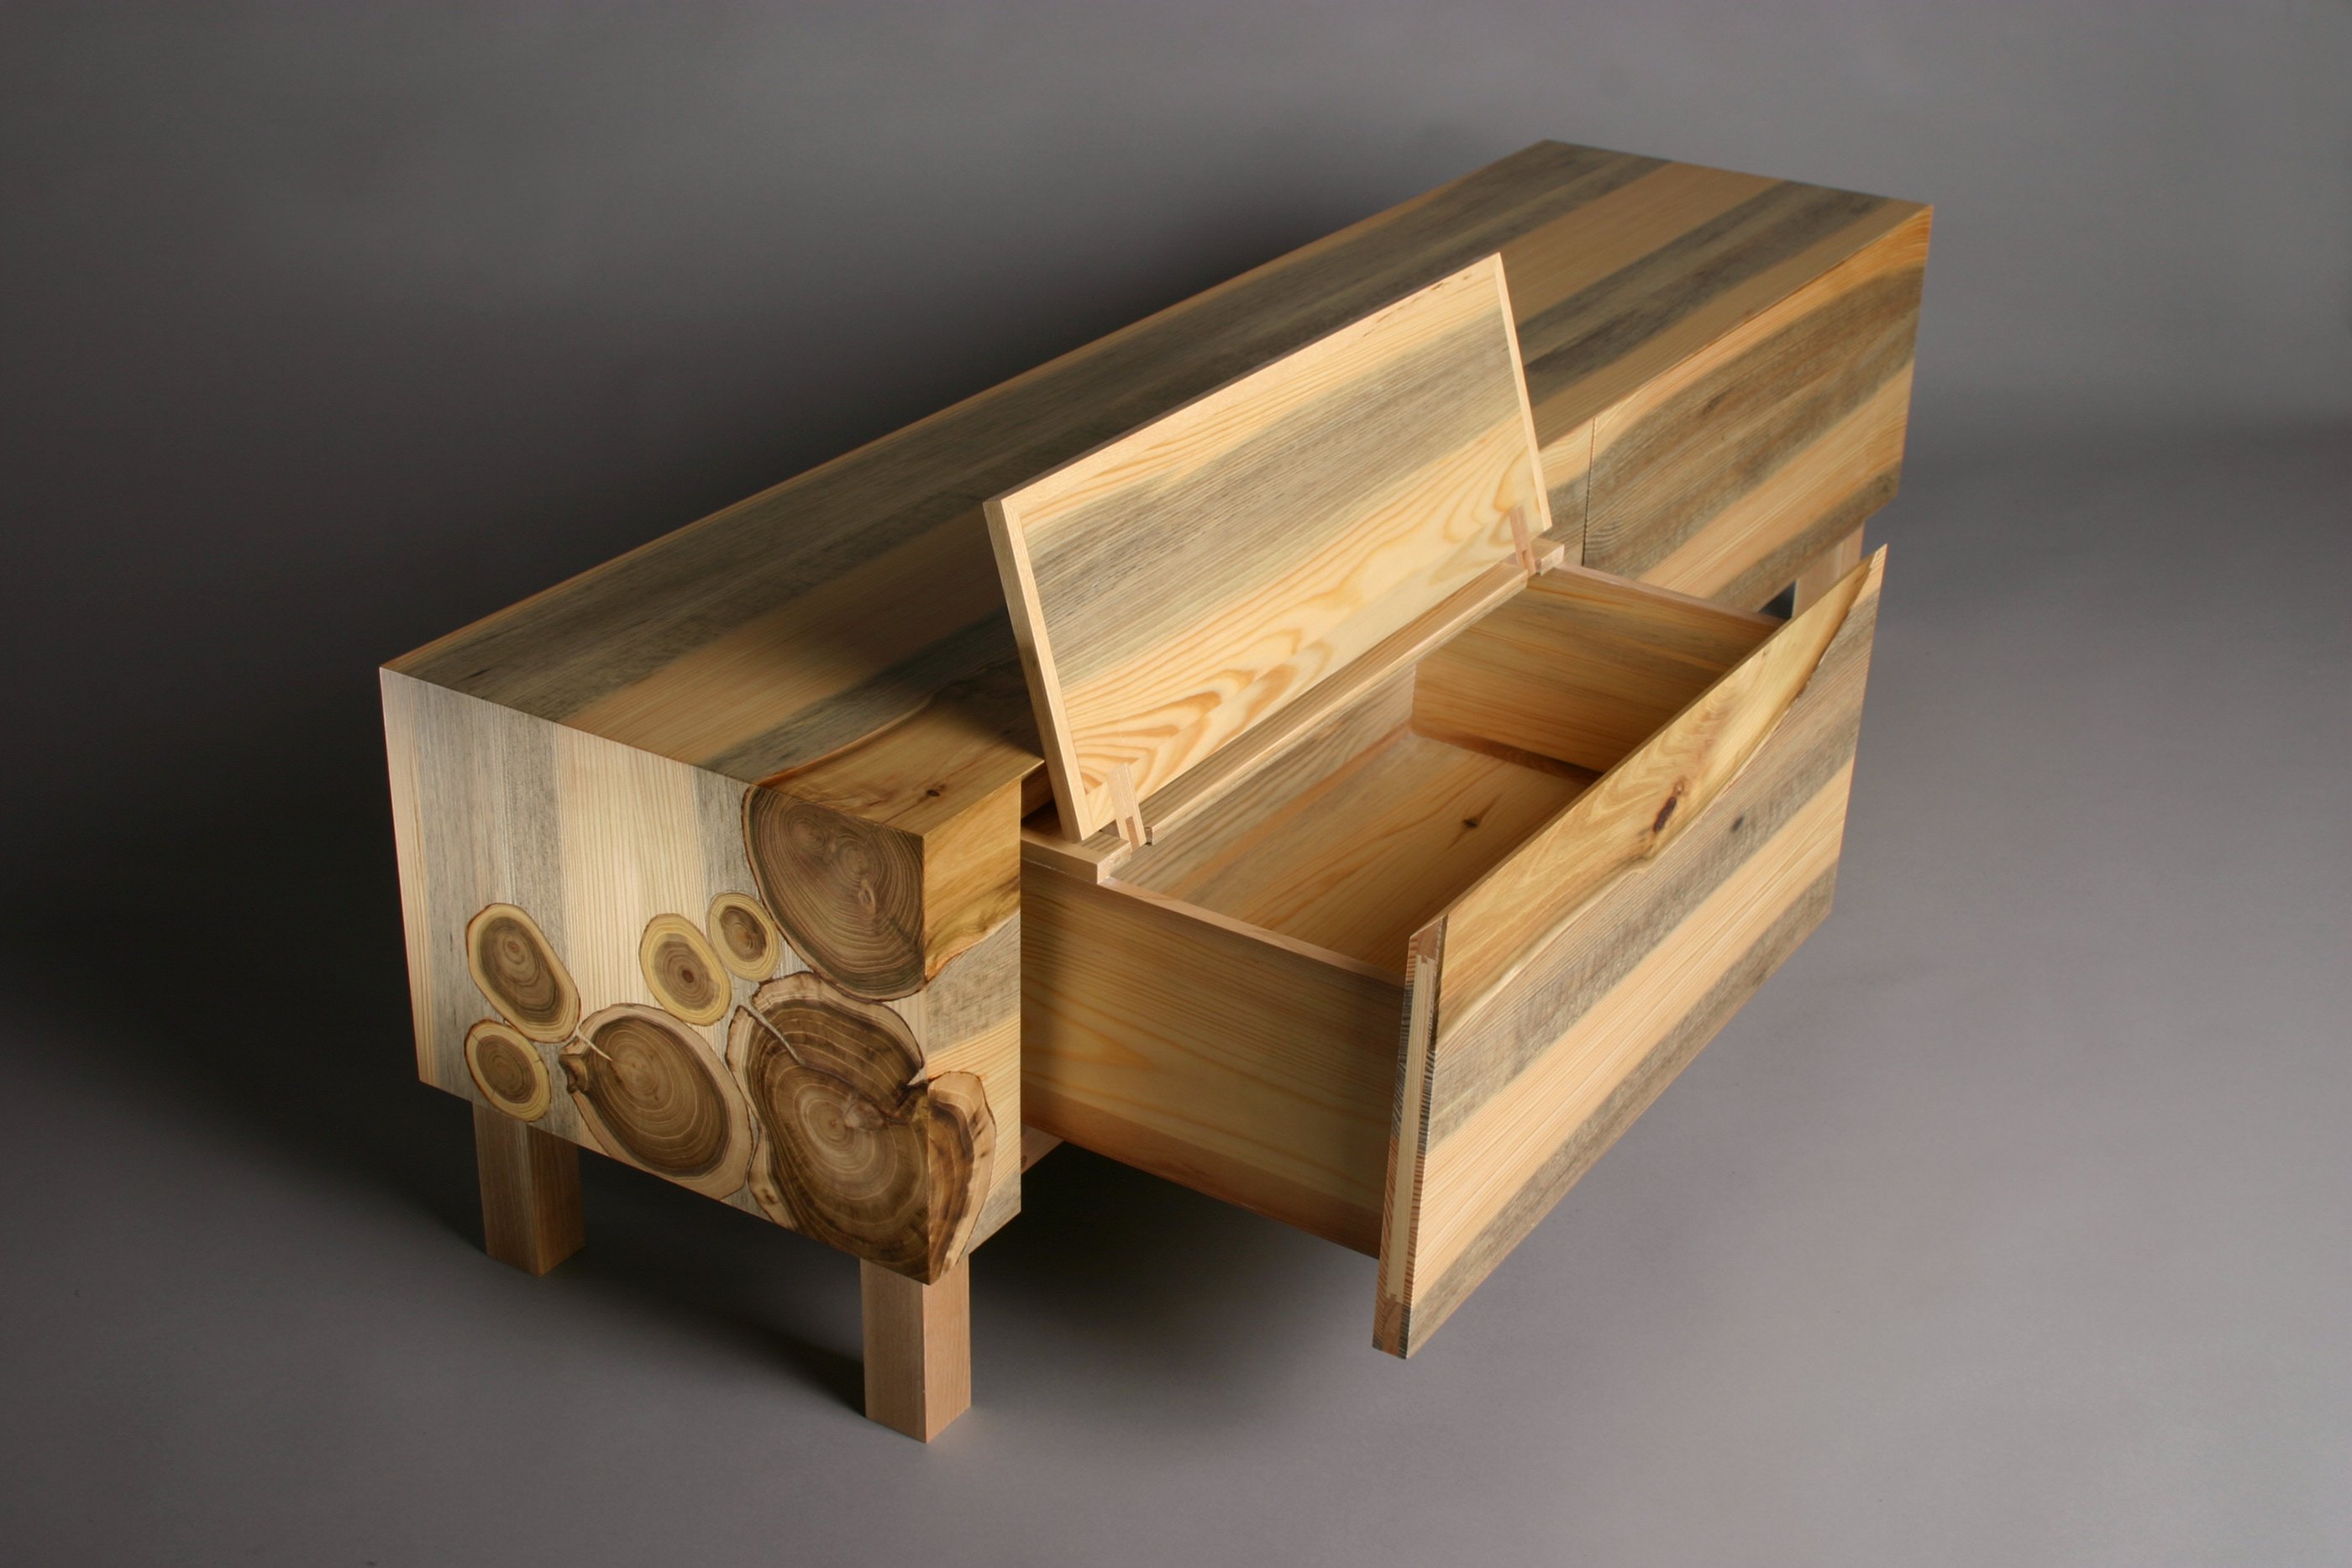 Wooden мебель. Интересные деревянные изделия. Мебель из дерева. Современная деревянная мебель.